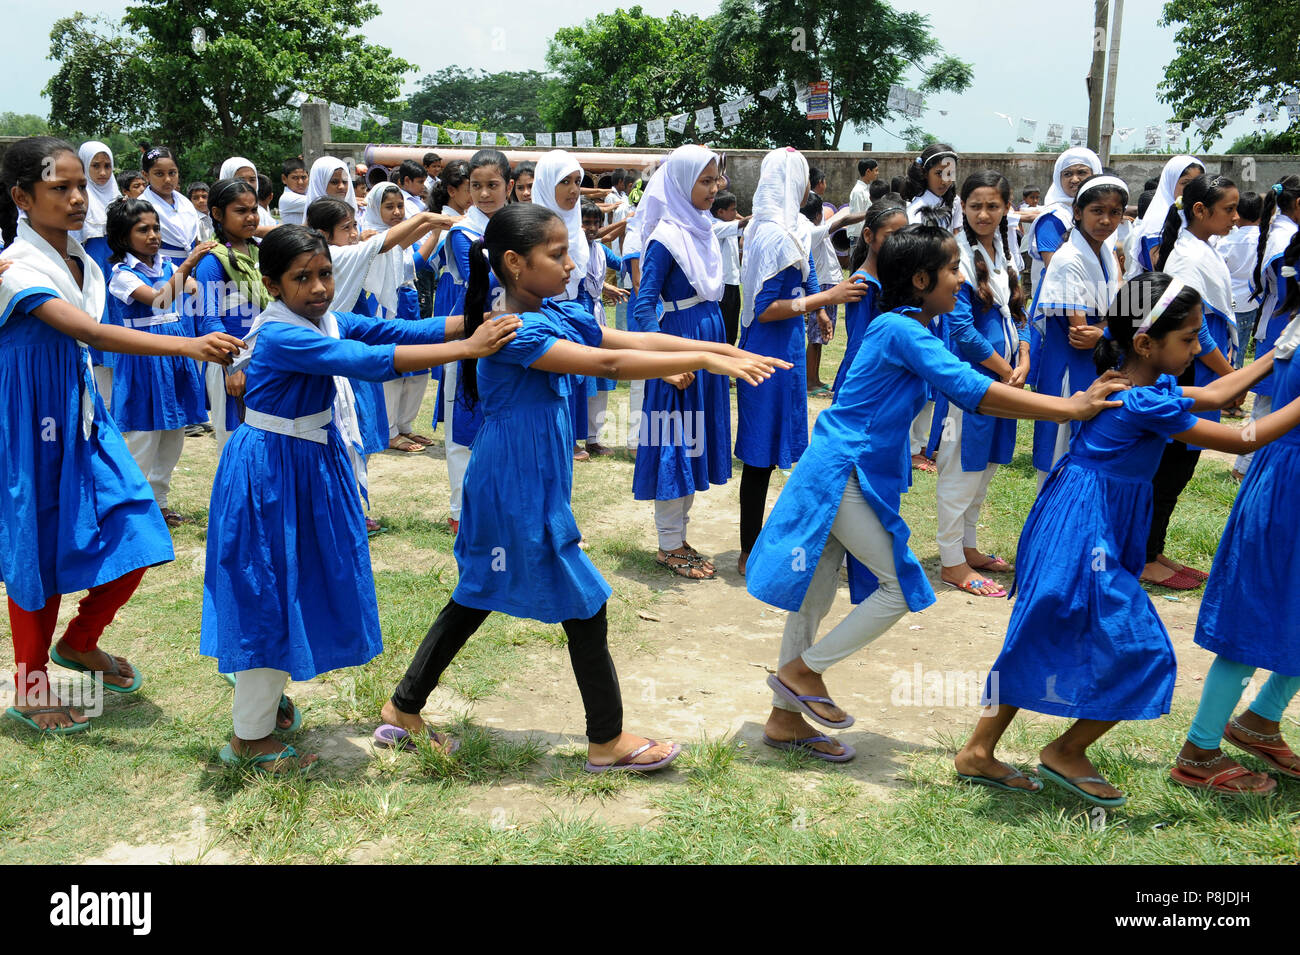 Dhaka, Bangladesh - 05 juin 2016 : les pratiques des étudiants du Bangladesh l'exercice physique à l'école à Narayanganj, près de Dhaka, Bangladesh. Chaque jour, le s Banque D'Images